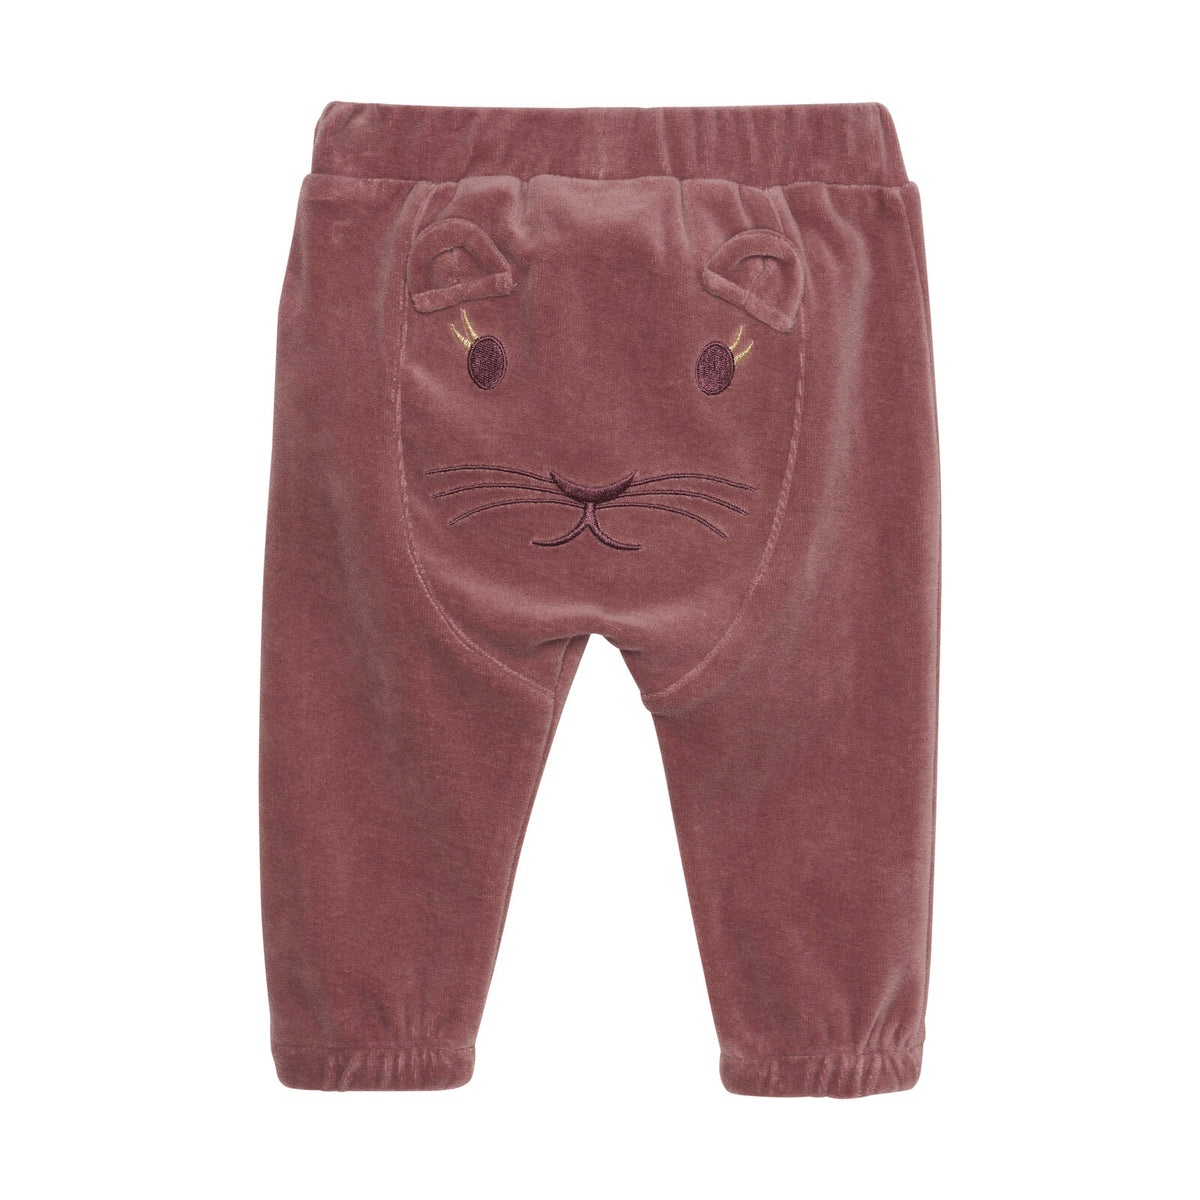 Die Pants ist aus Velourstoff und hat auf der Rückseite einen süßen Bärenkopf. Die Hose hat einen Gummibund an der Taille und ein kleines Bündchen am Beinende.